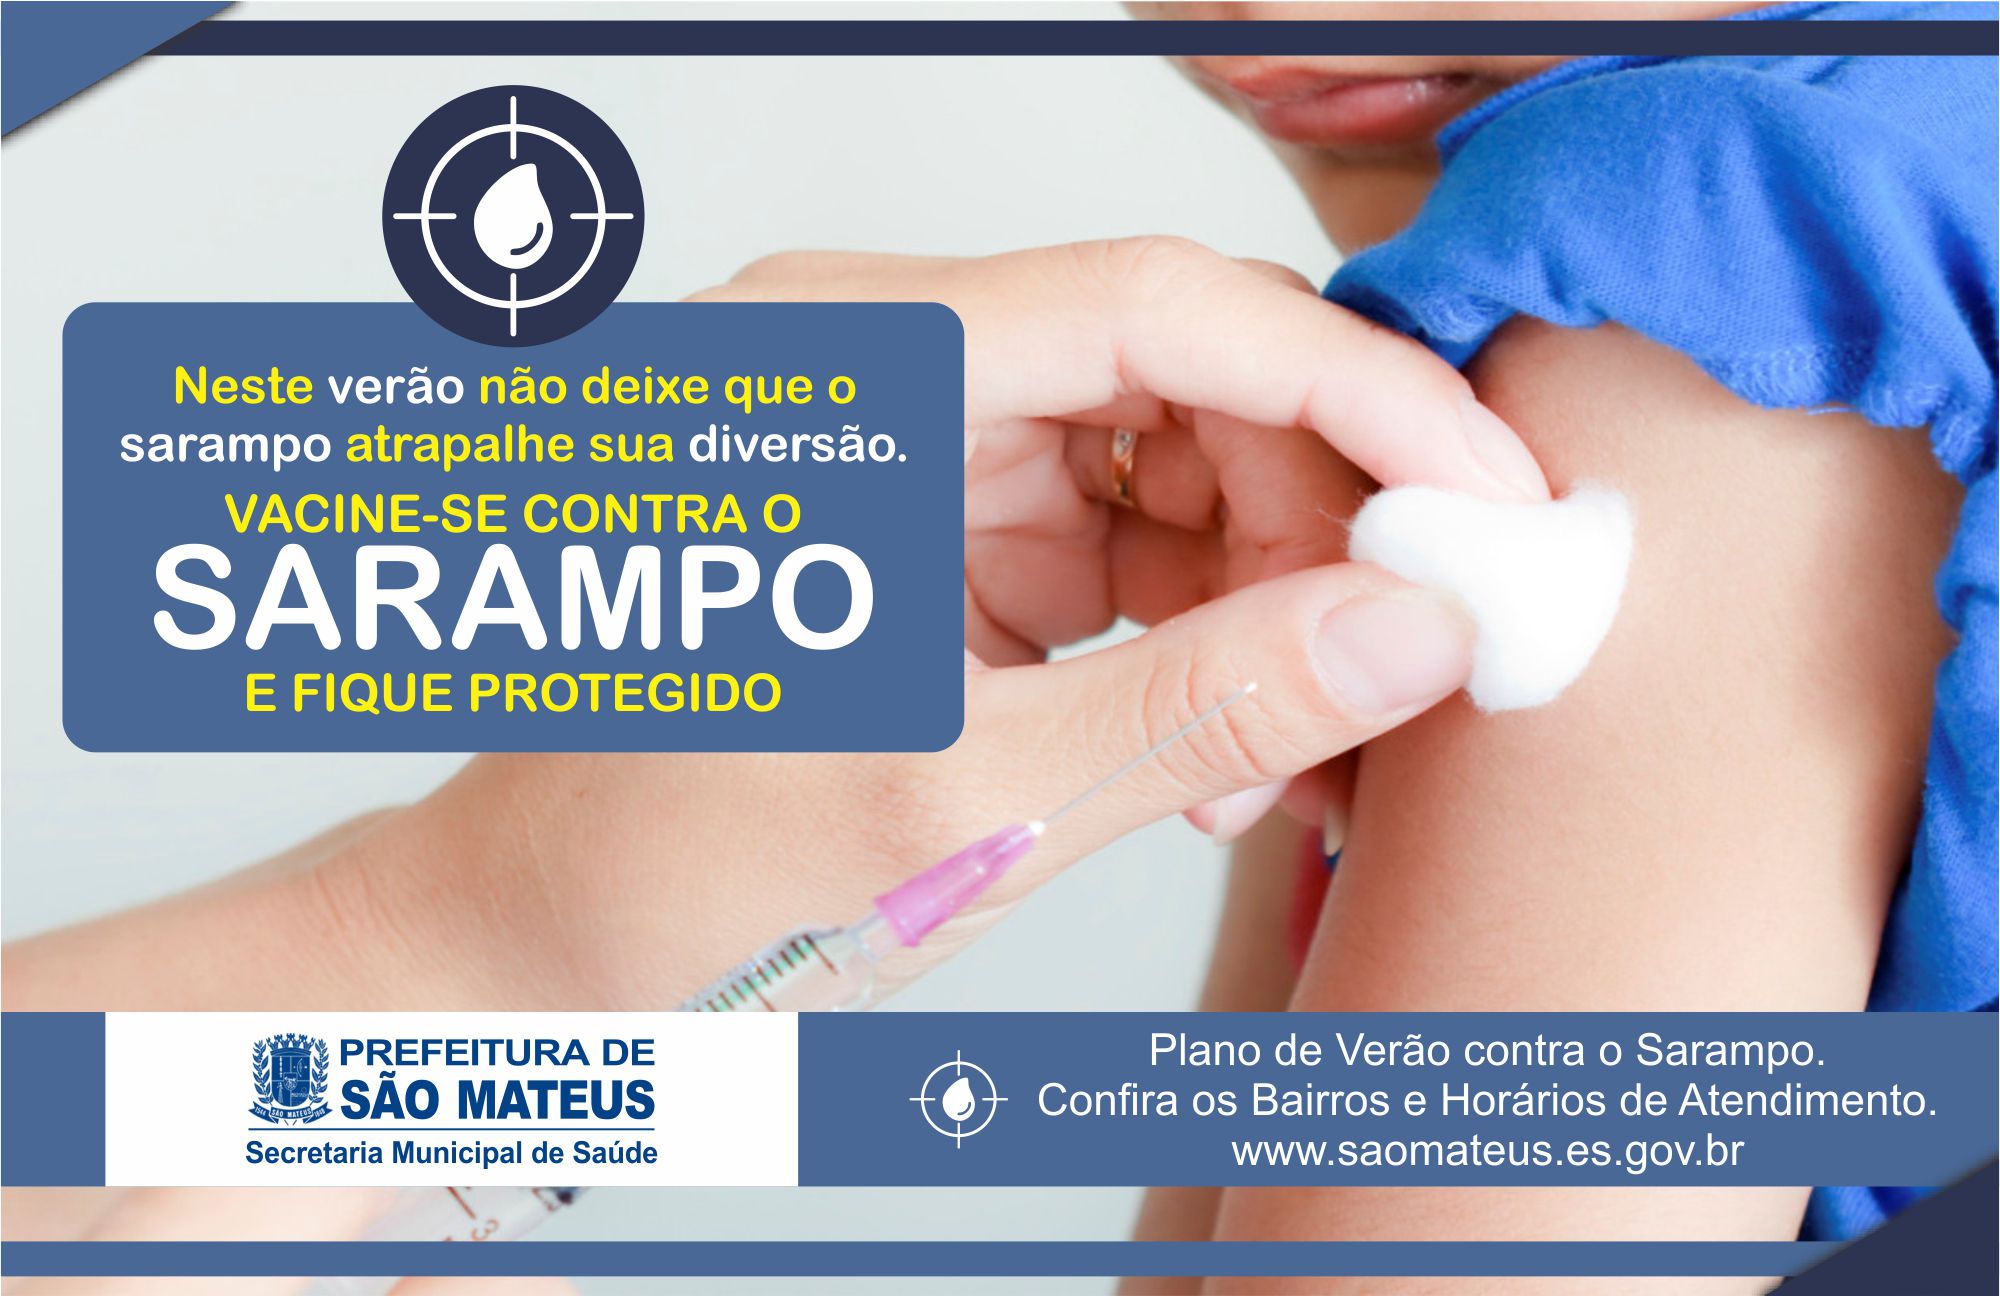 PMSM realiza calendário de vacinação contra o sarampo durante o verão